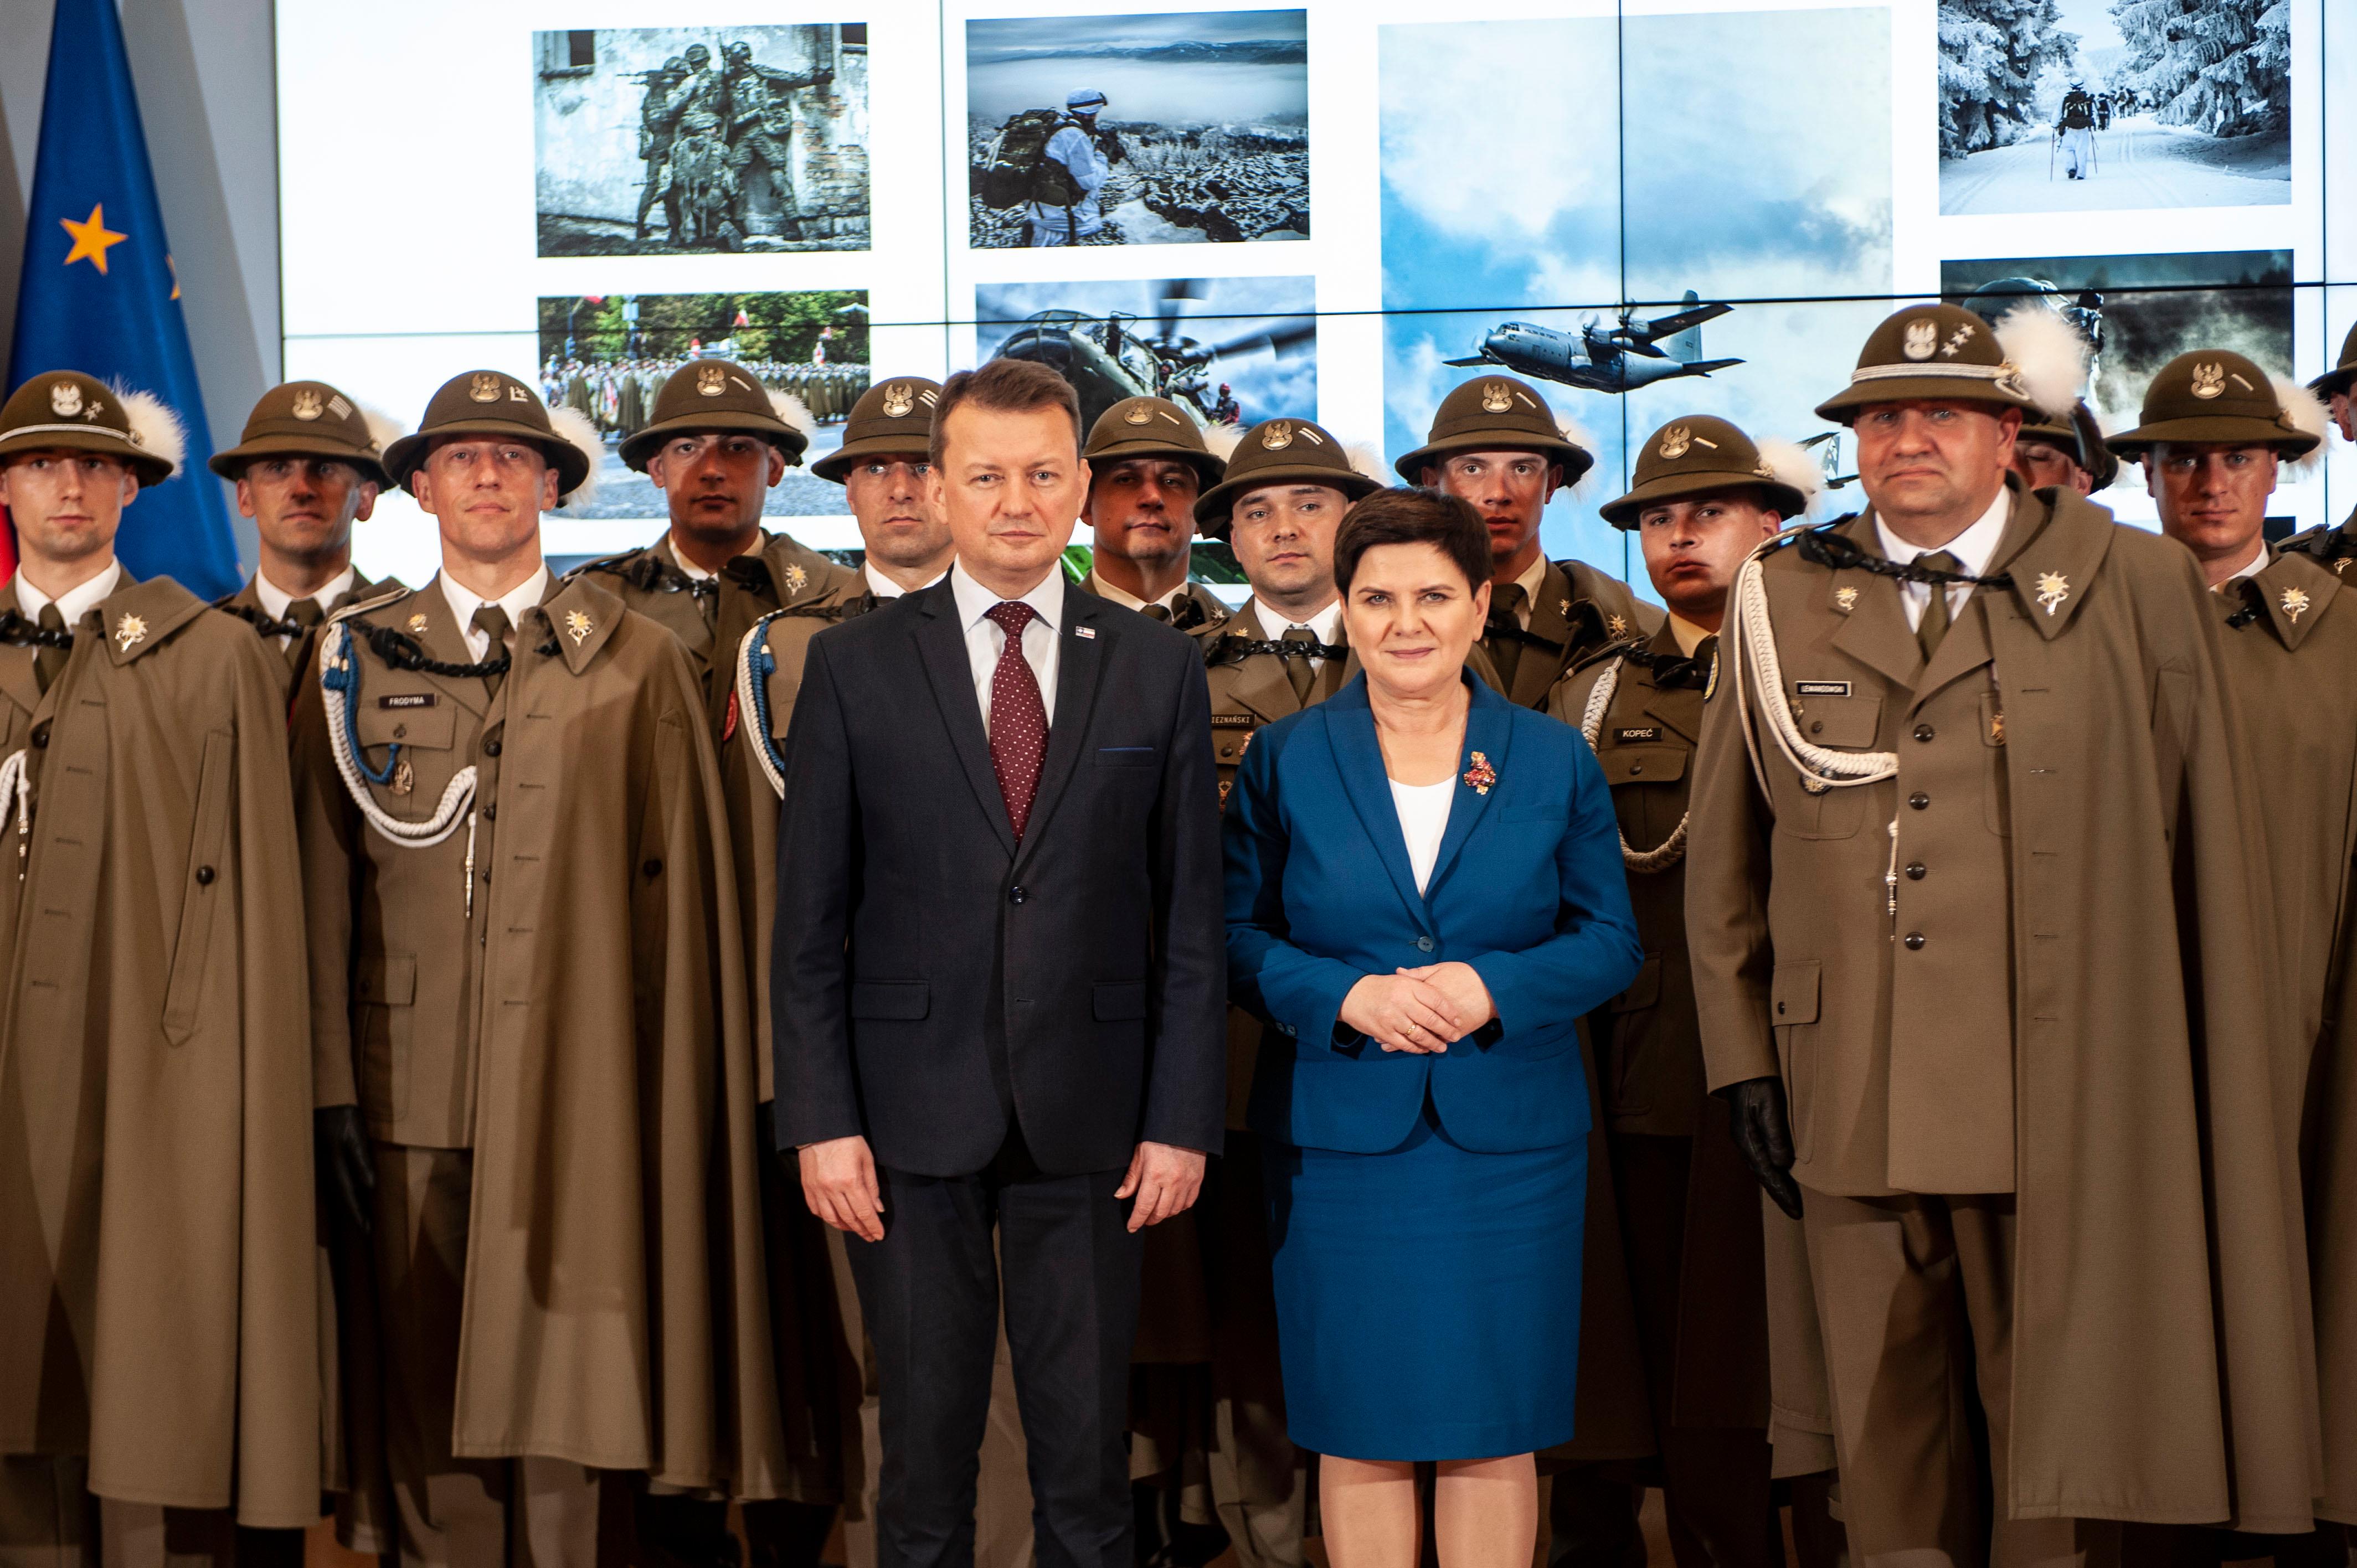 Wicepremier Beata Szydło i minister Mariusz Błaszczak podczas wspólnego zdjęcia z żołnierzami.